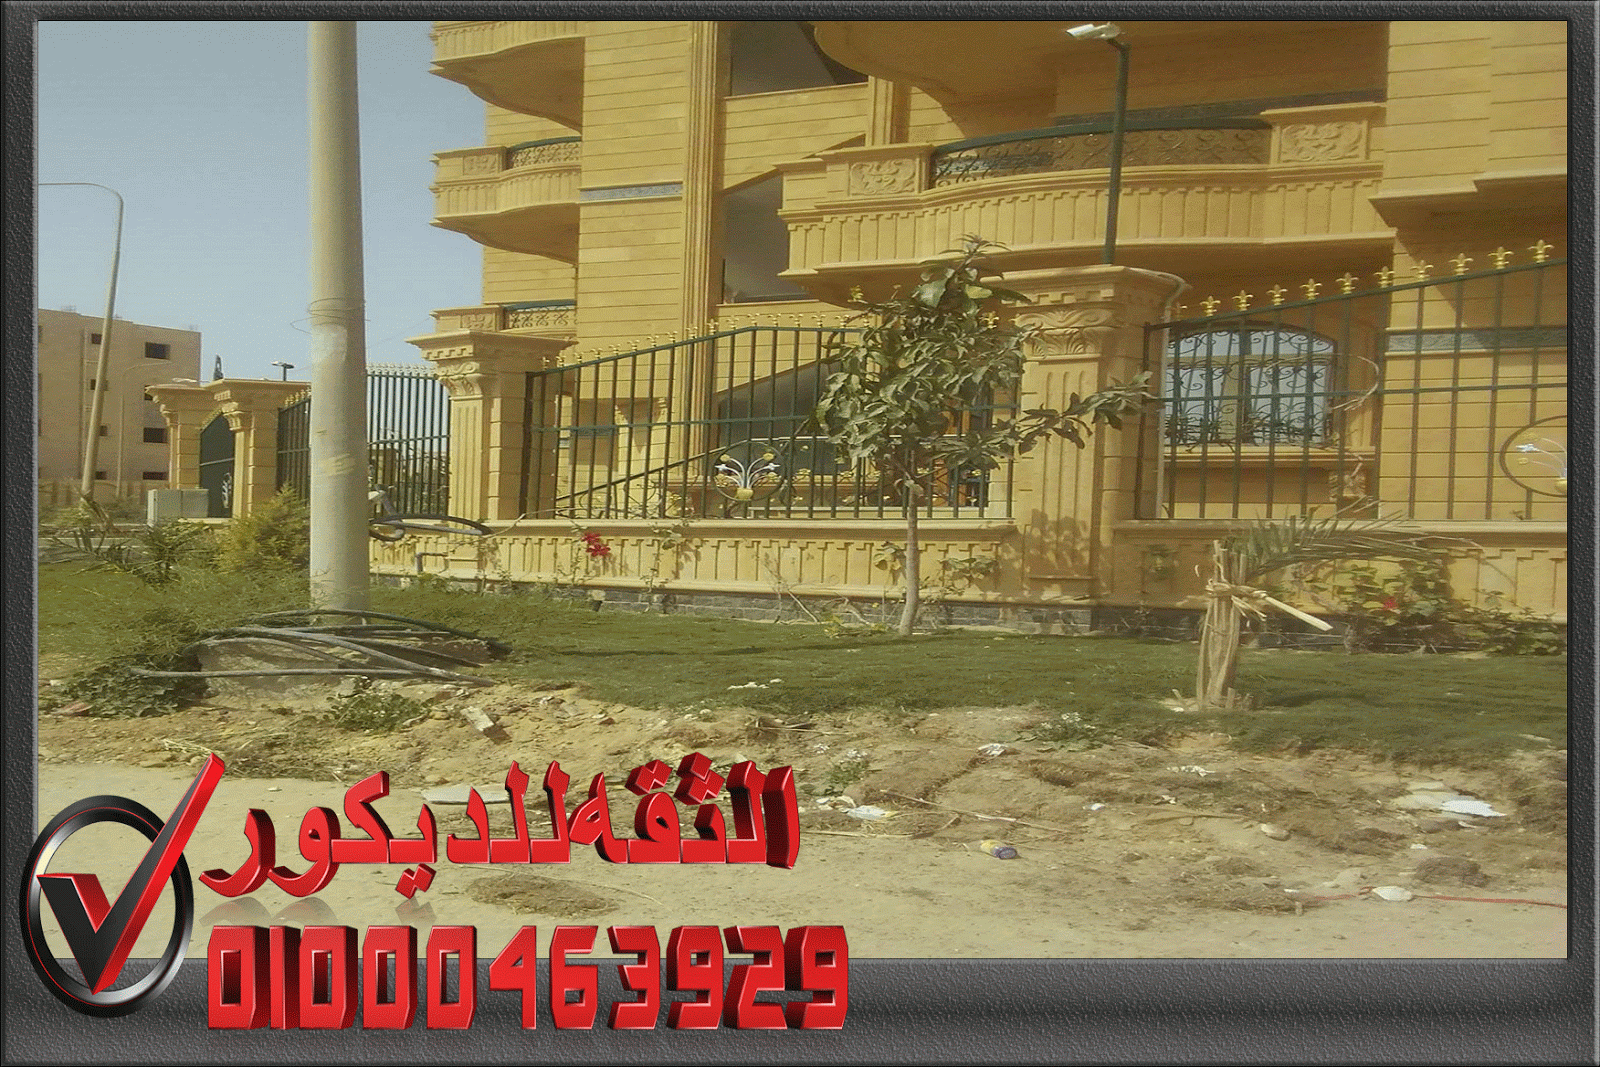 الثقه للديكور تصميم وجهات منازل وفلل وقصور بالحجر مهندس حجر هاشمه في مصر 01000463929